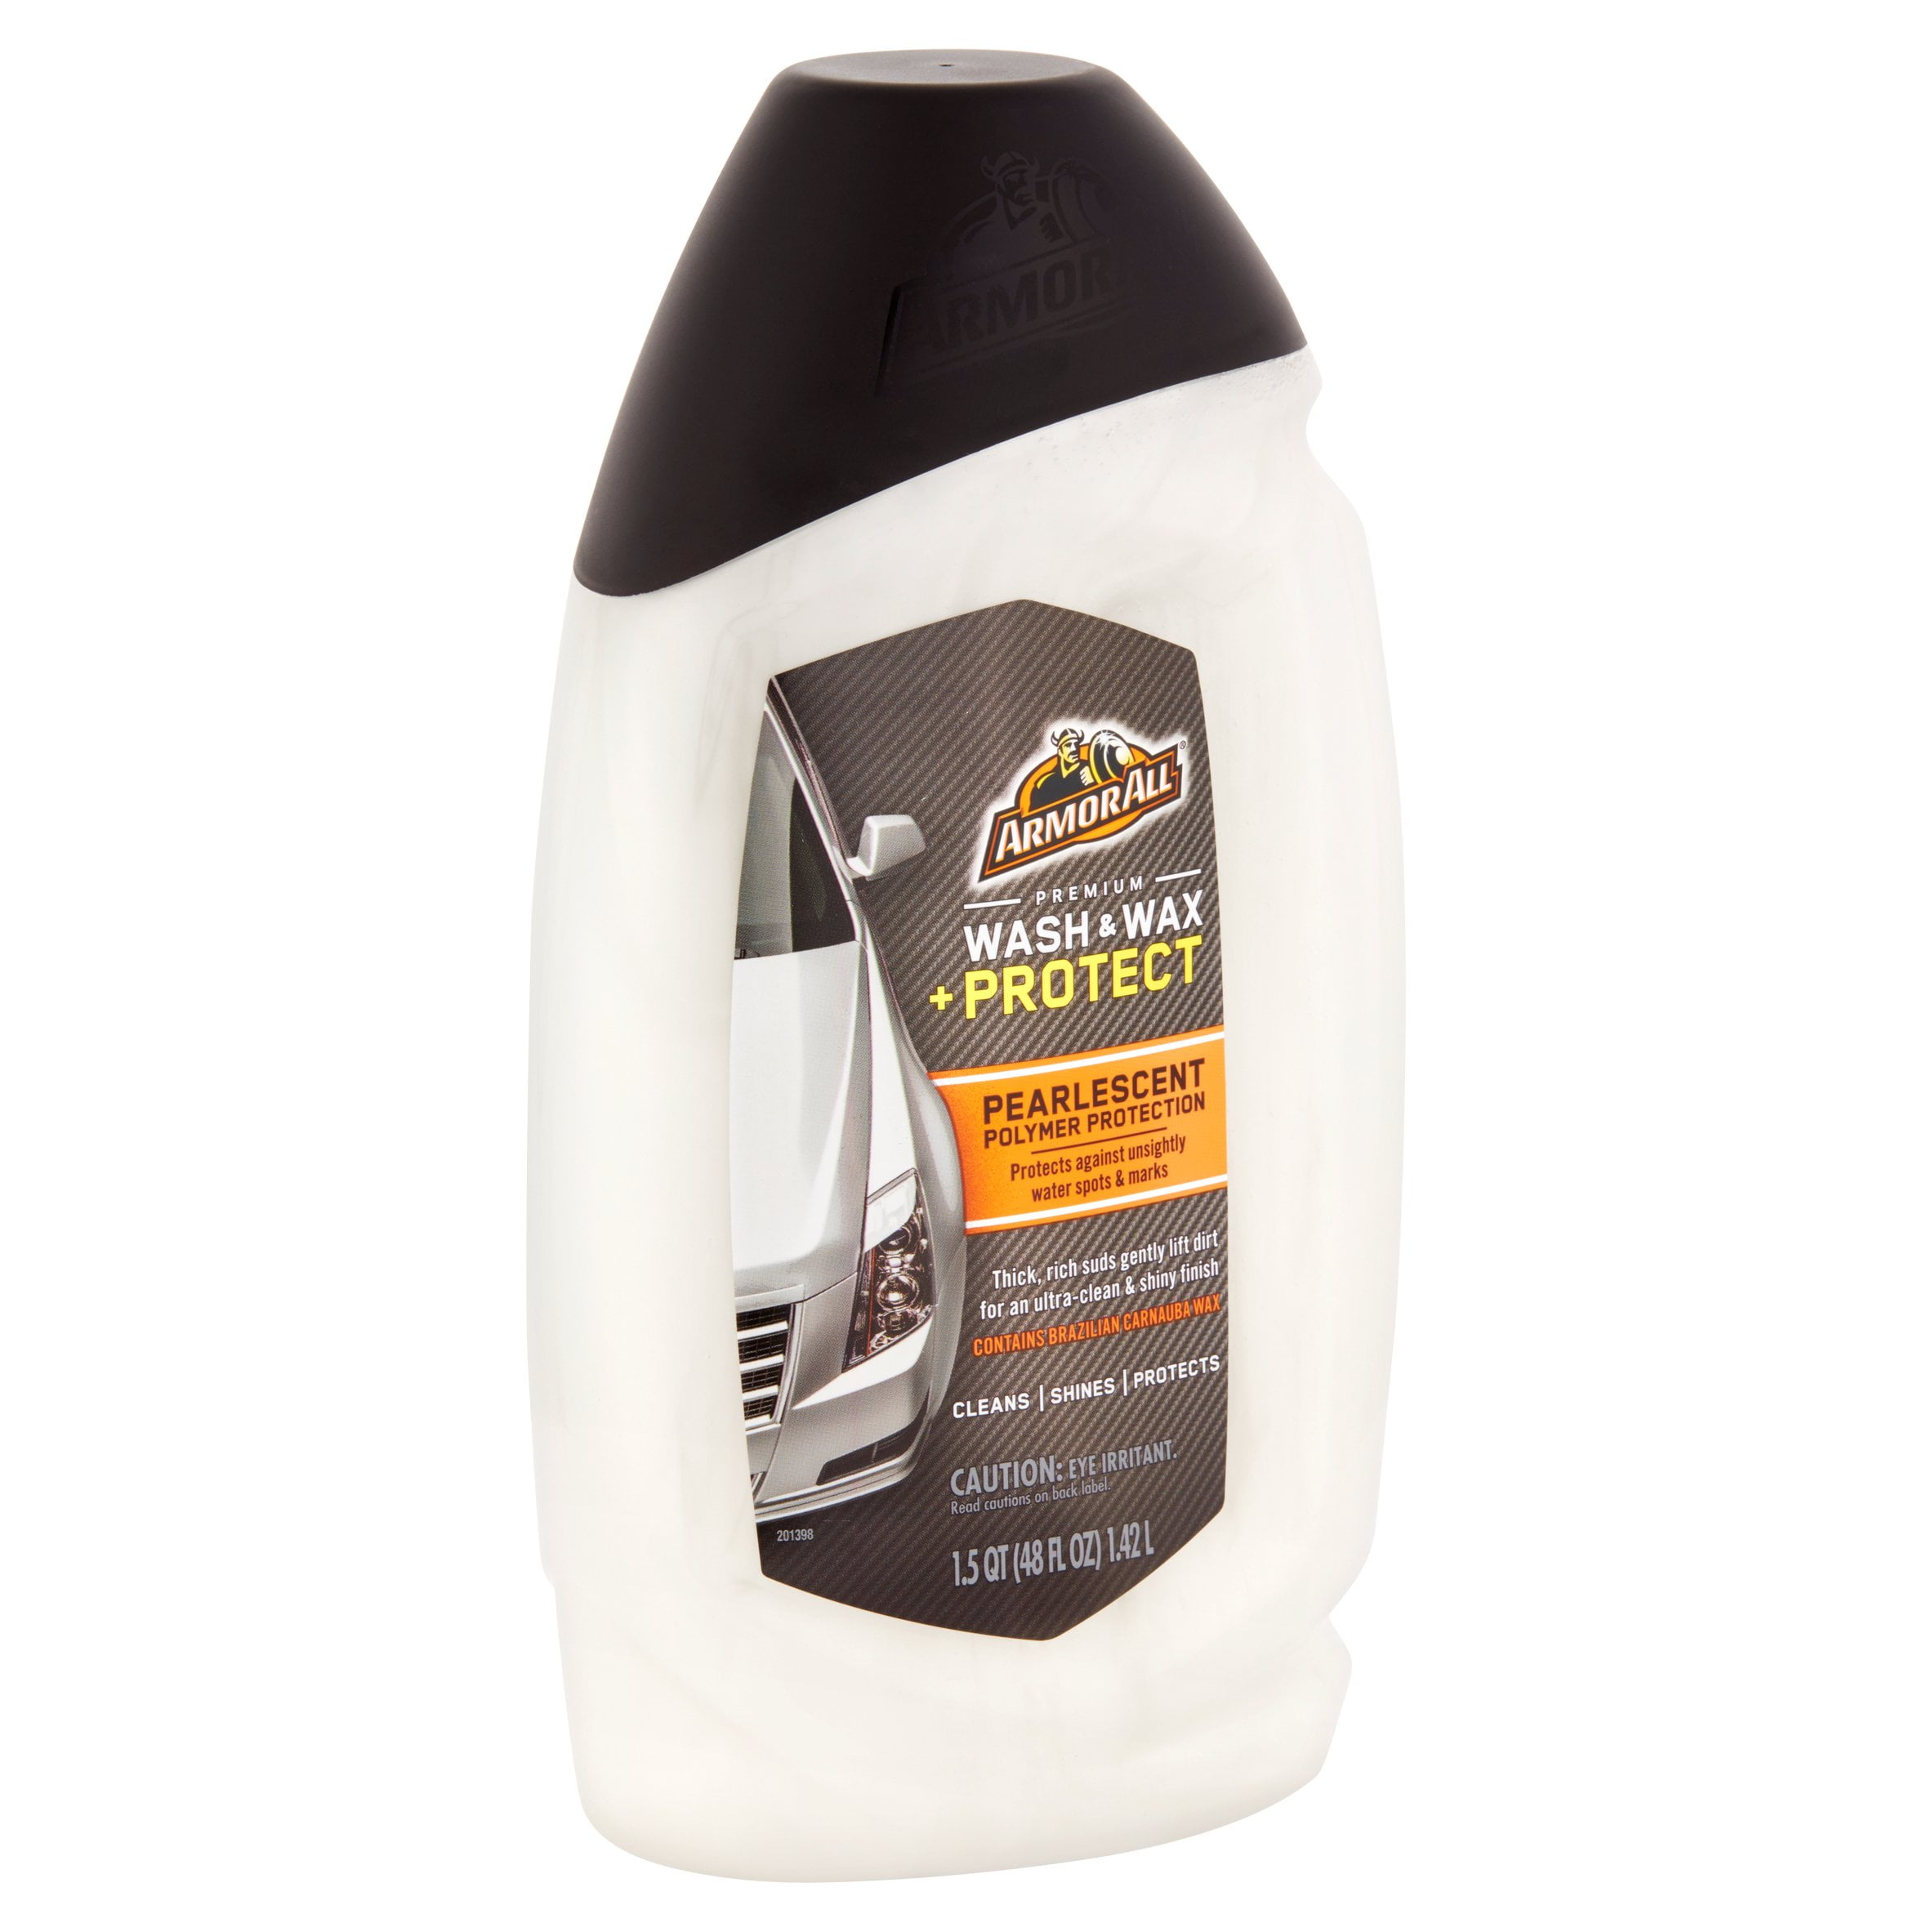 Armor All Premium Wash & Wax, 48 oz, Car Wash, Car Cleaning 